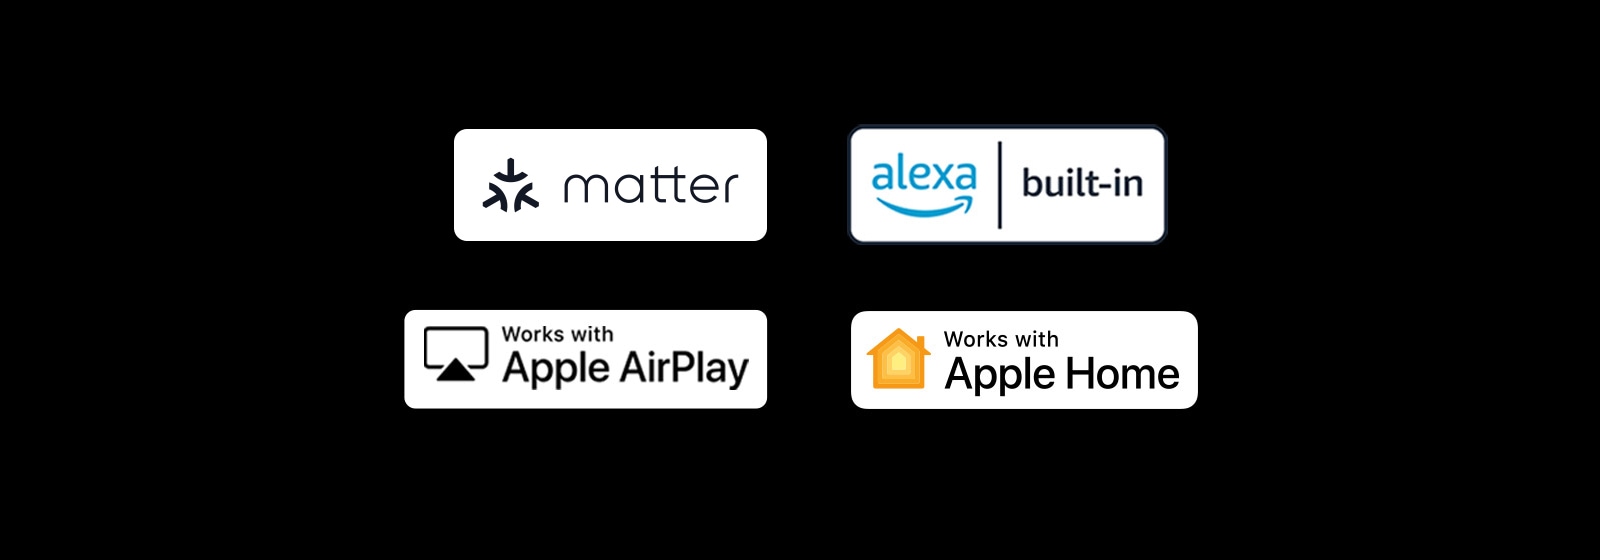 "Logo của alexa được tích hợp sẵn Logo của các tác phẩm với Apple AirPlay Logo của các tác phẩm với Apple Home Logo của các tác phẩm với Matter"